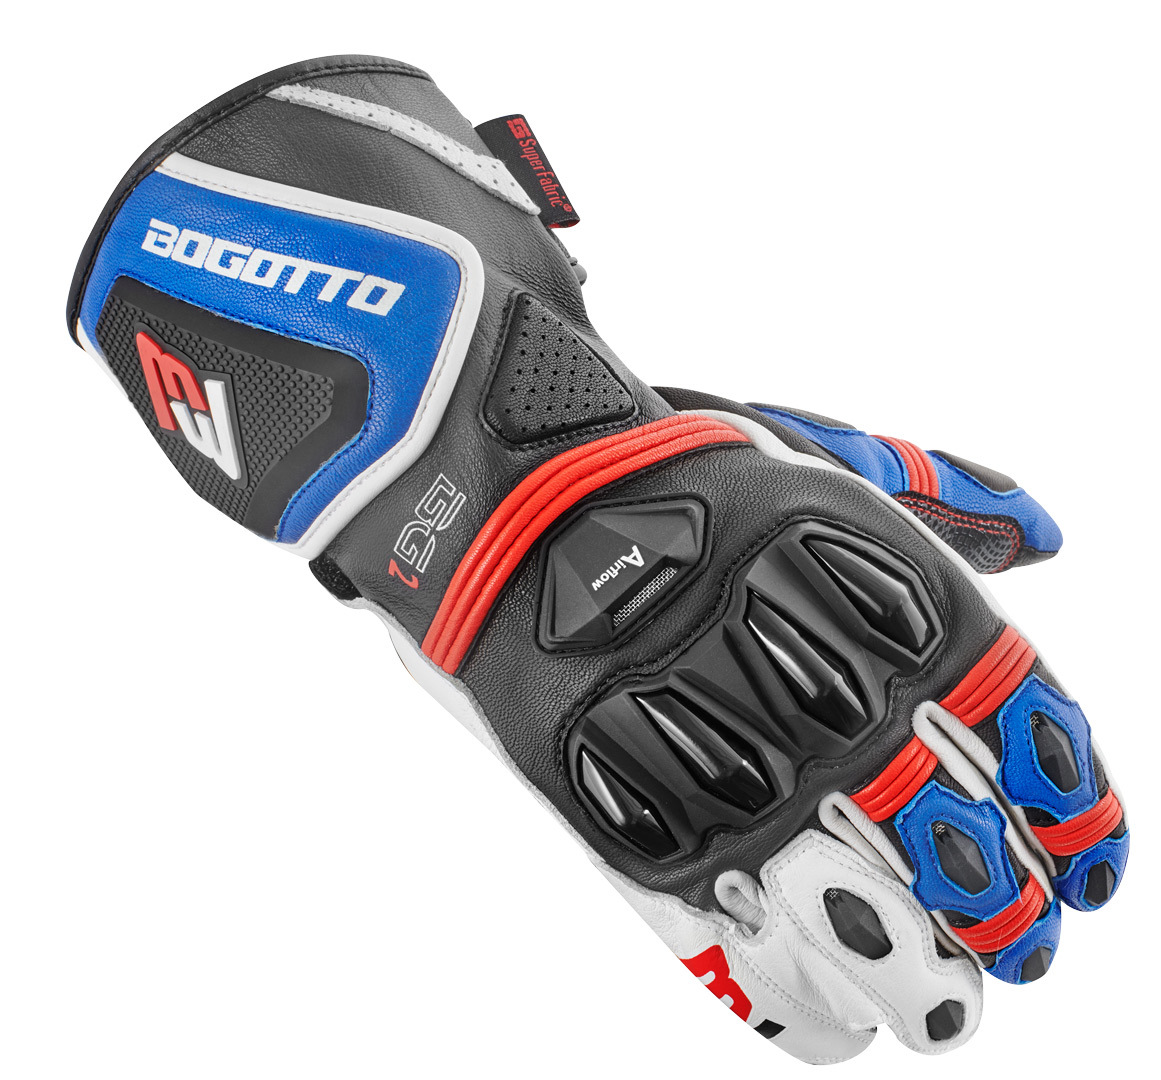 Мотоциклетные перчатки Bogotto Monza с регулировкой на запястье, синий/белый/красный